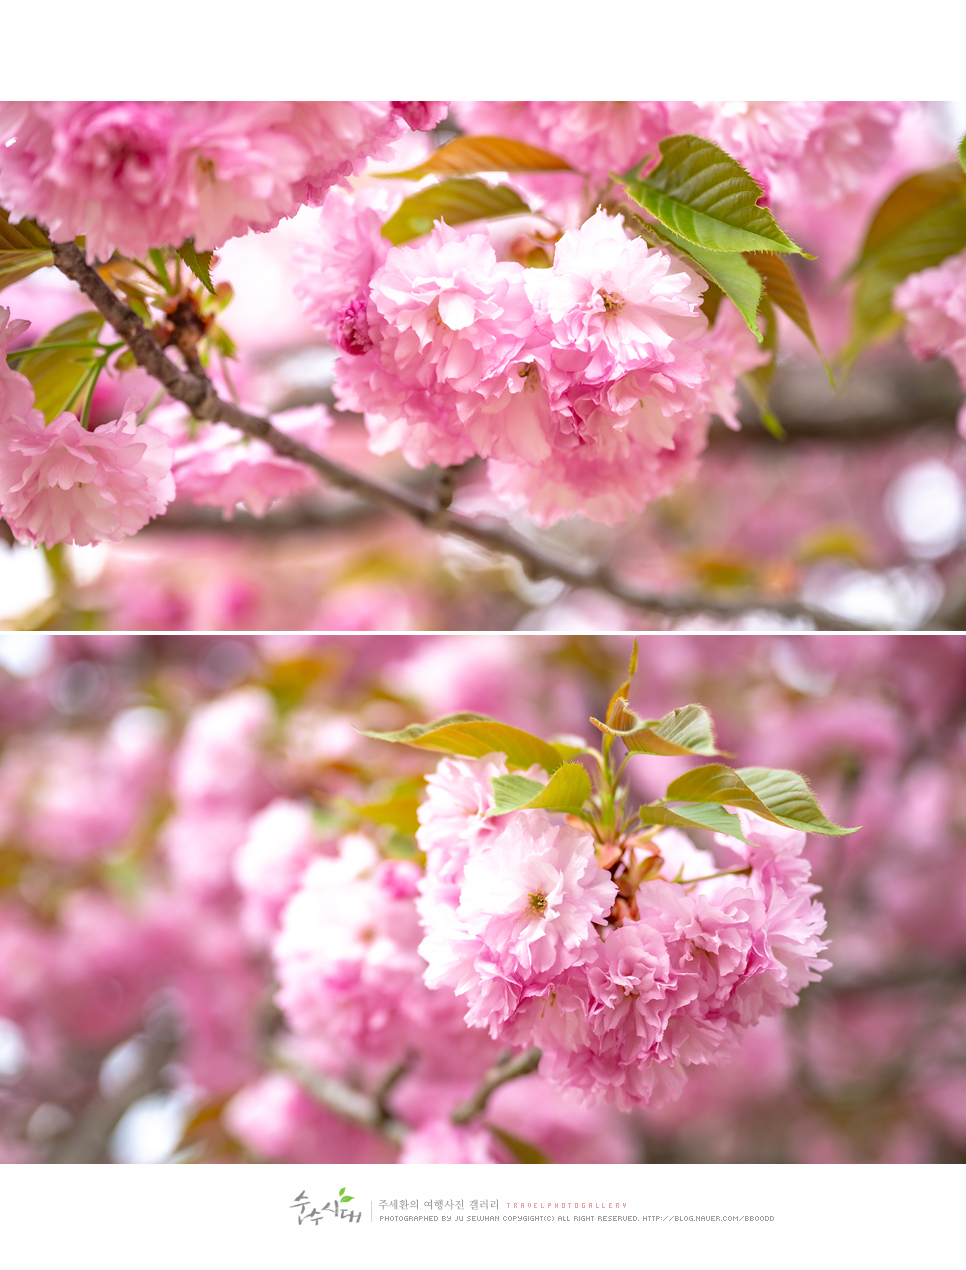 천안 각원사 겹벚꽃 만개 4월 꽃구경 천안 겹벚꽃